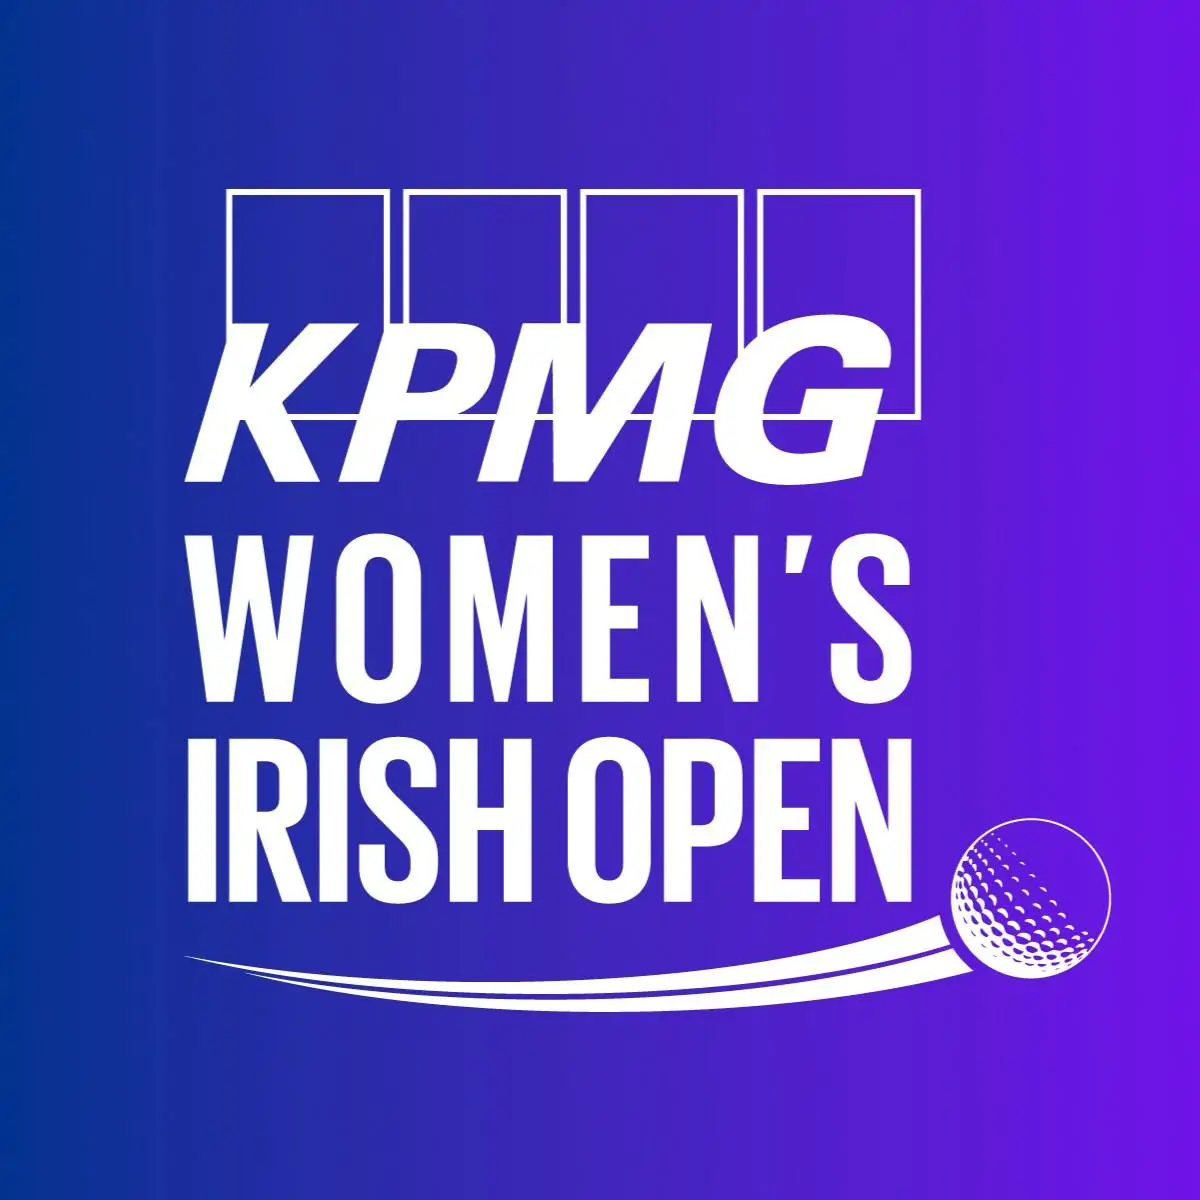 Women's Irish Open Logo